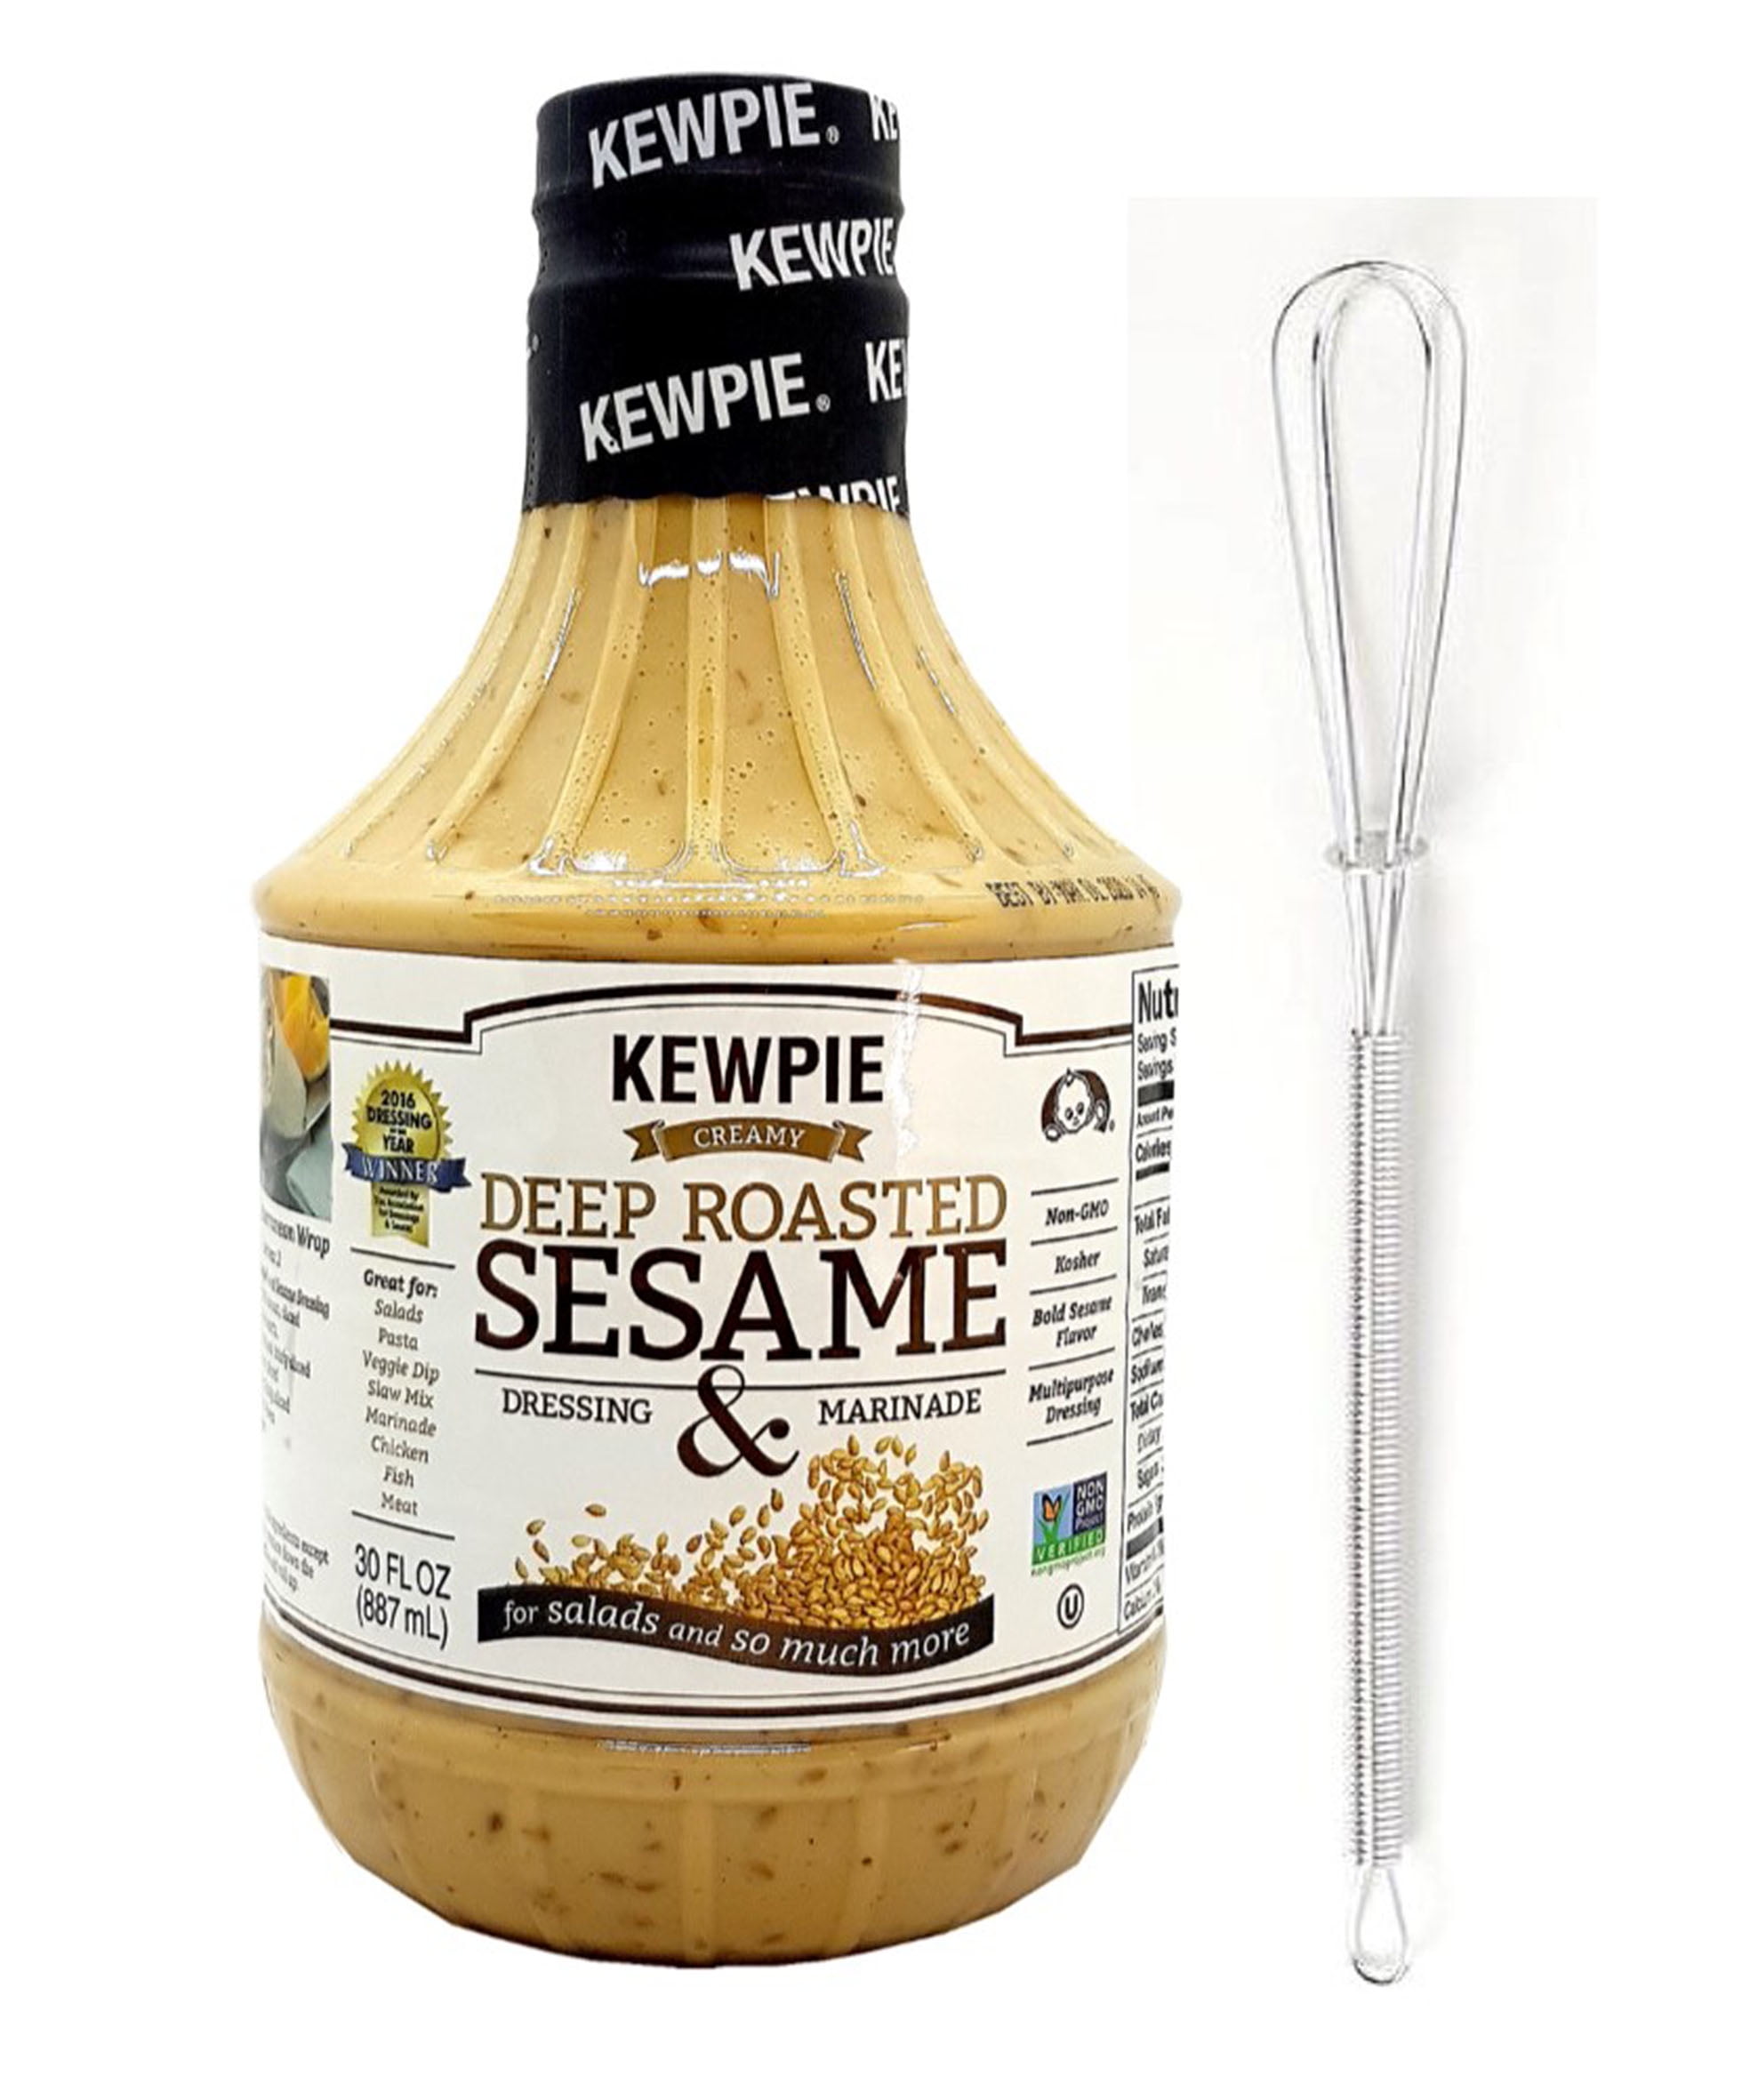 Kewpie Deep Roasted Sesame Dressing Recipes - Find Vegetarian Recipes